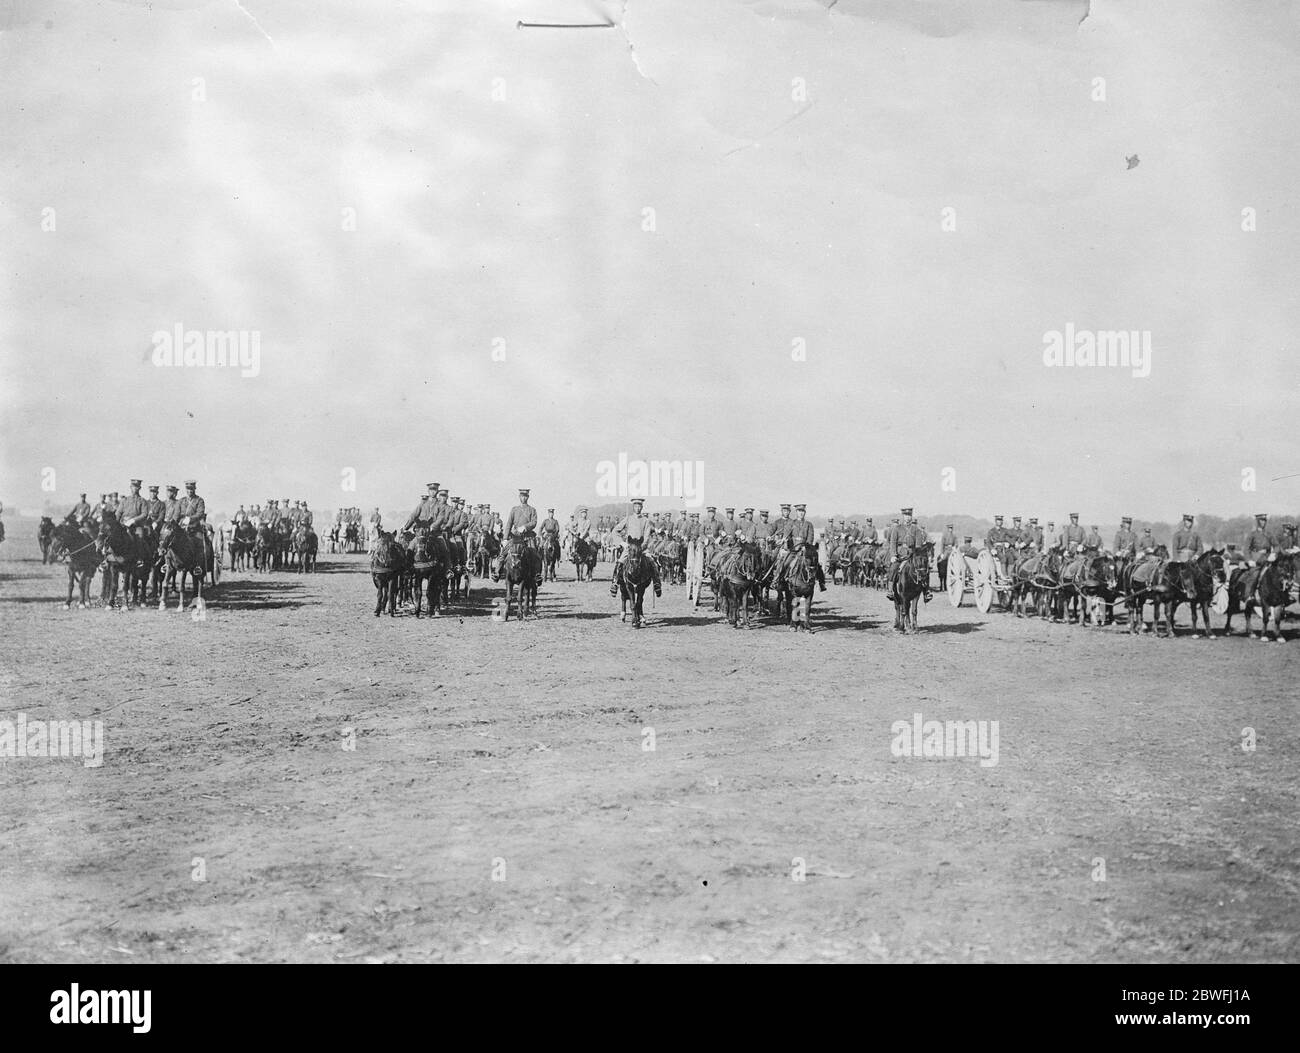 Bürgerkrieg in China . Chinesische Artillerie auf dem marsch . Dieses Bild gibt einen guten Eindruck vom aktuellen Aussehen und der Ausstattung der chinesischen regulären Armee. September 1924 Stockfoto